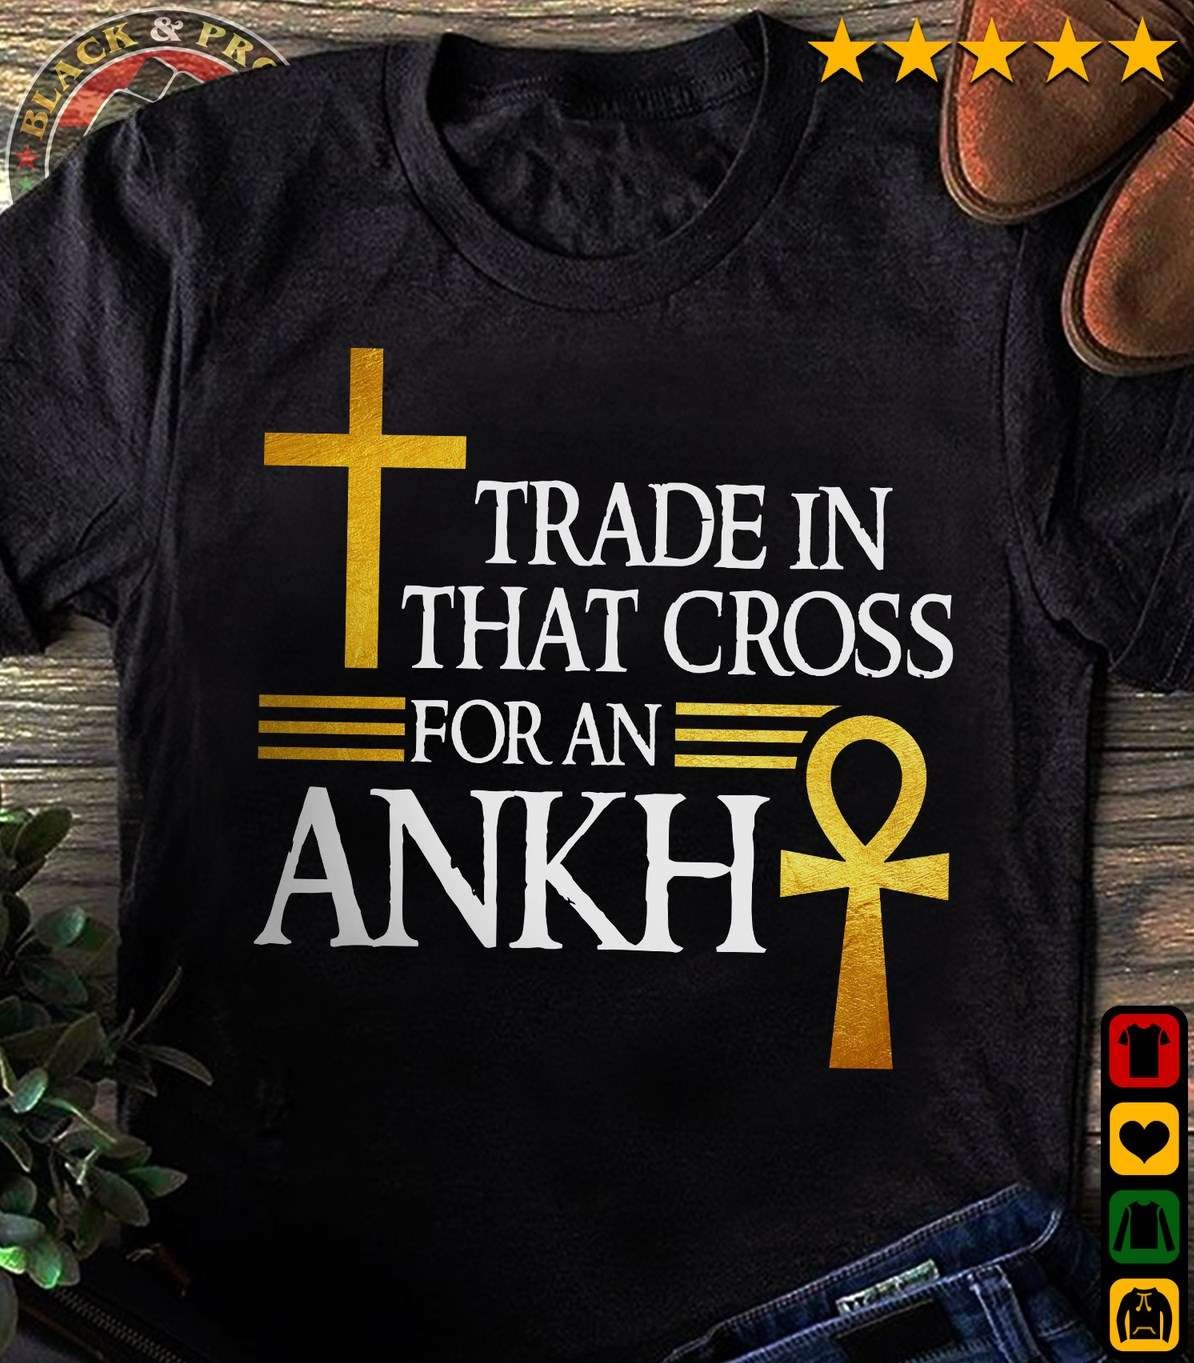 Trade in that cross for an ANKH - God cross, Ahkn cross, Believe in Jesus